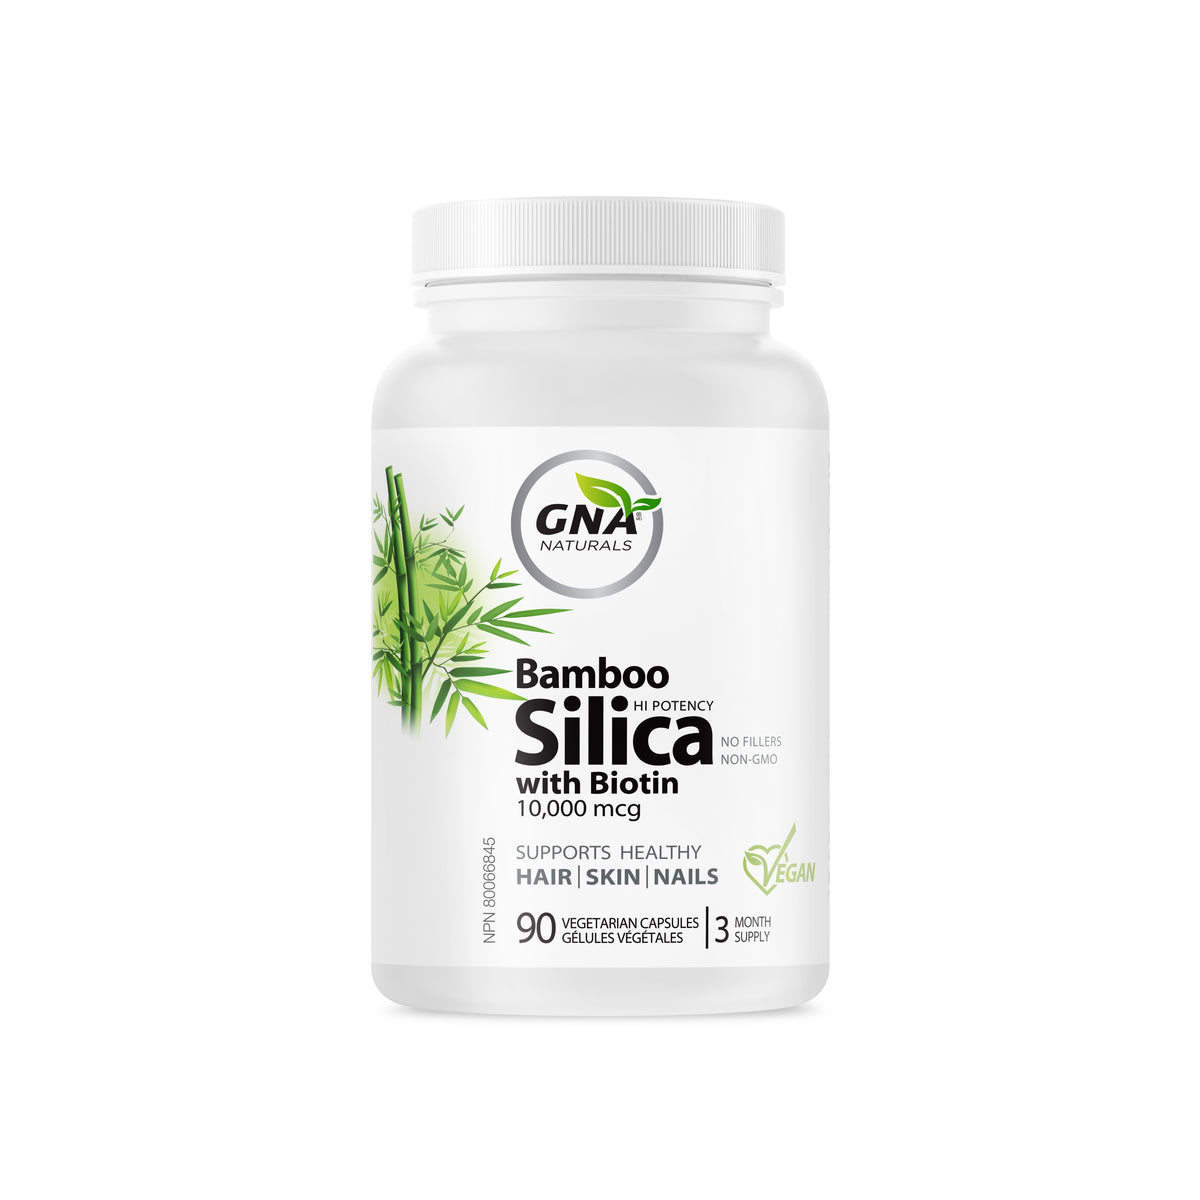 Hair Skin and Nails Vitamins - Bamboo Silica with Biotin